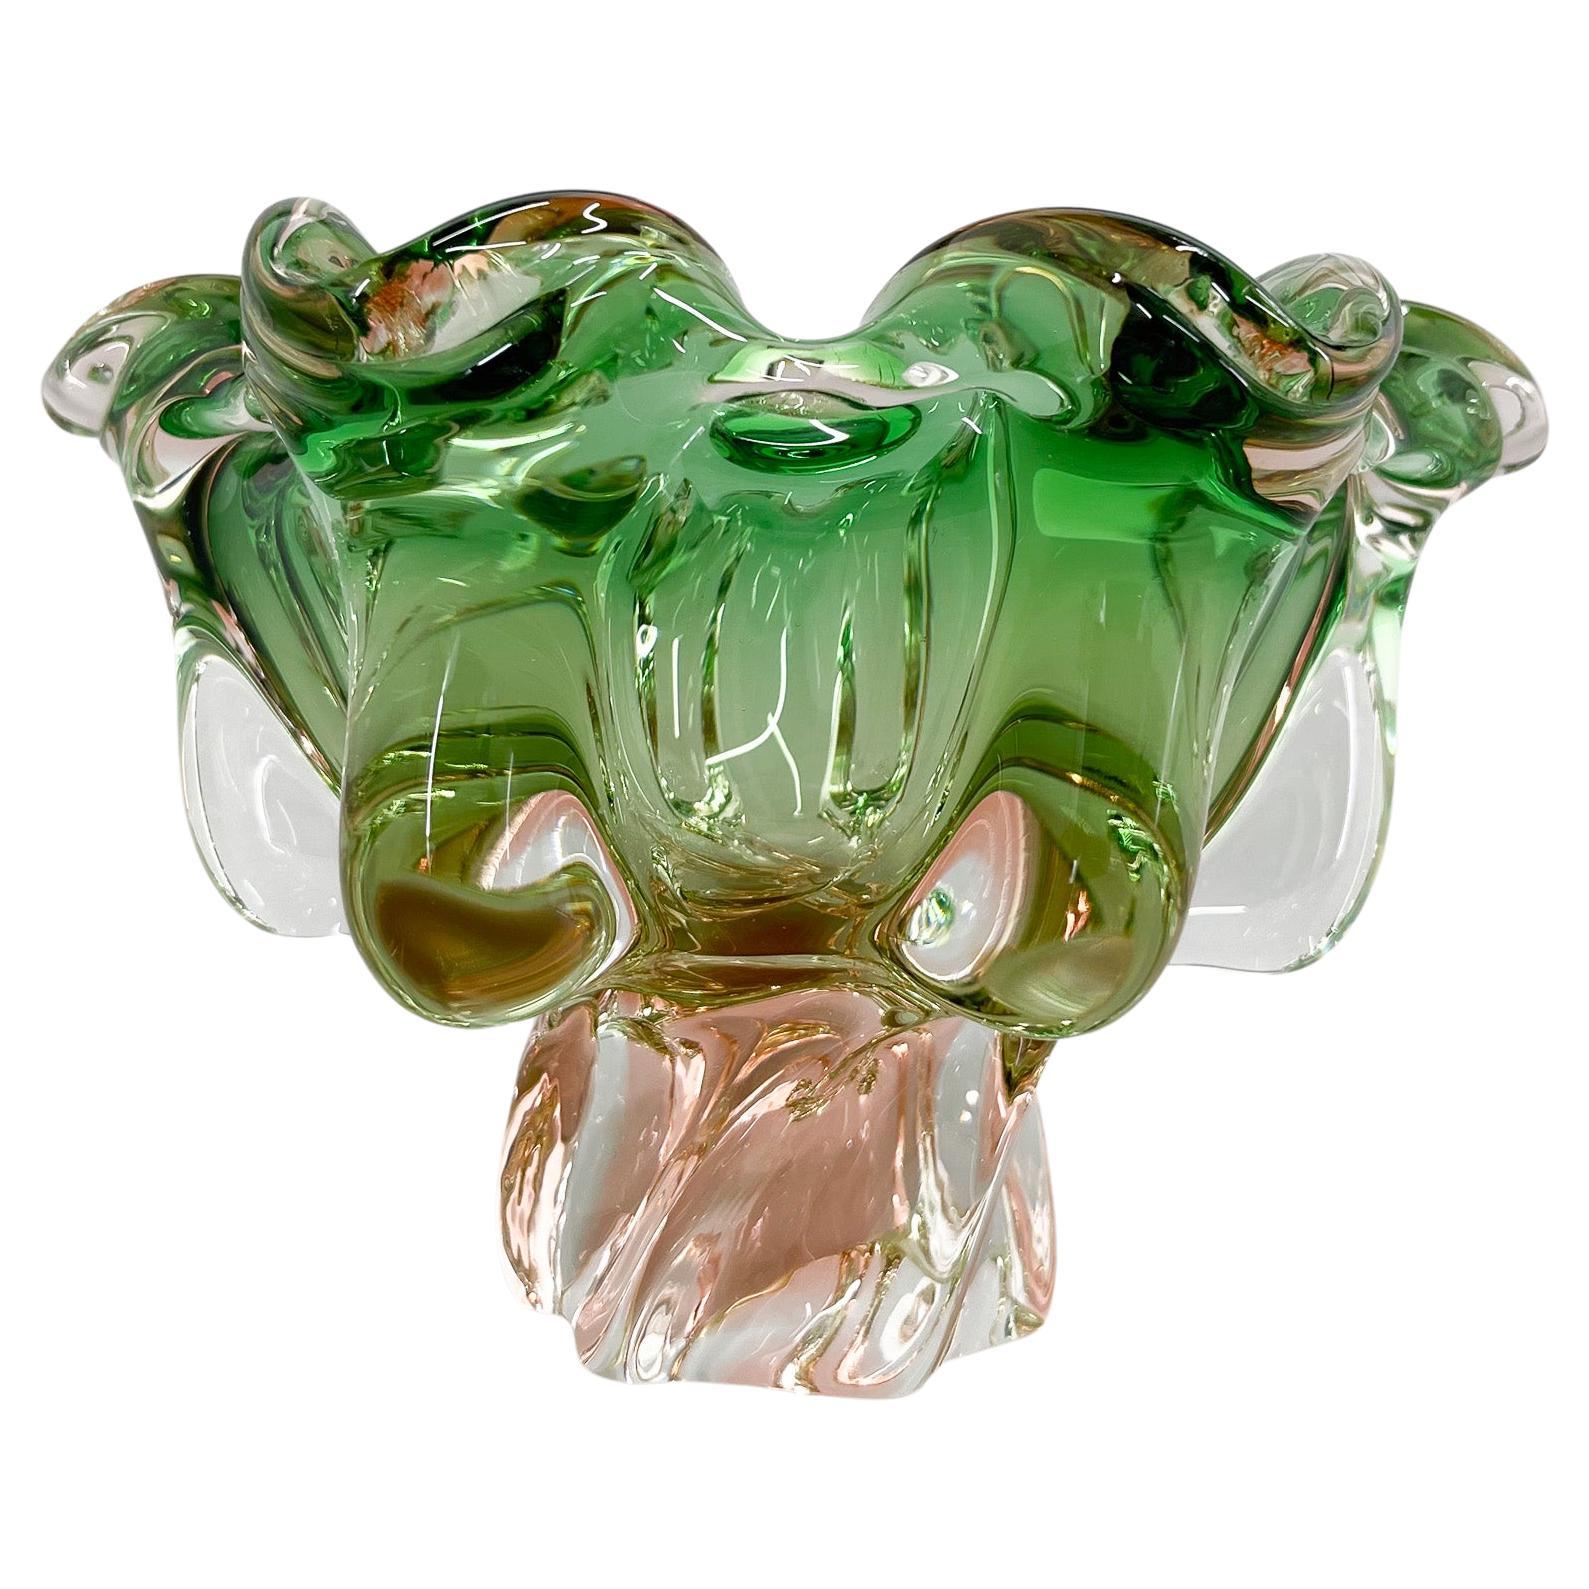 1960s Art Glass Bowl by Josef Hospodka for Chribska Glassworks, Czechoslovakia